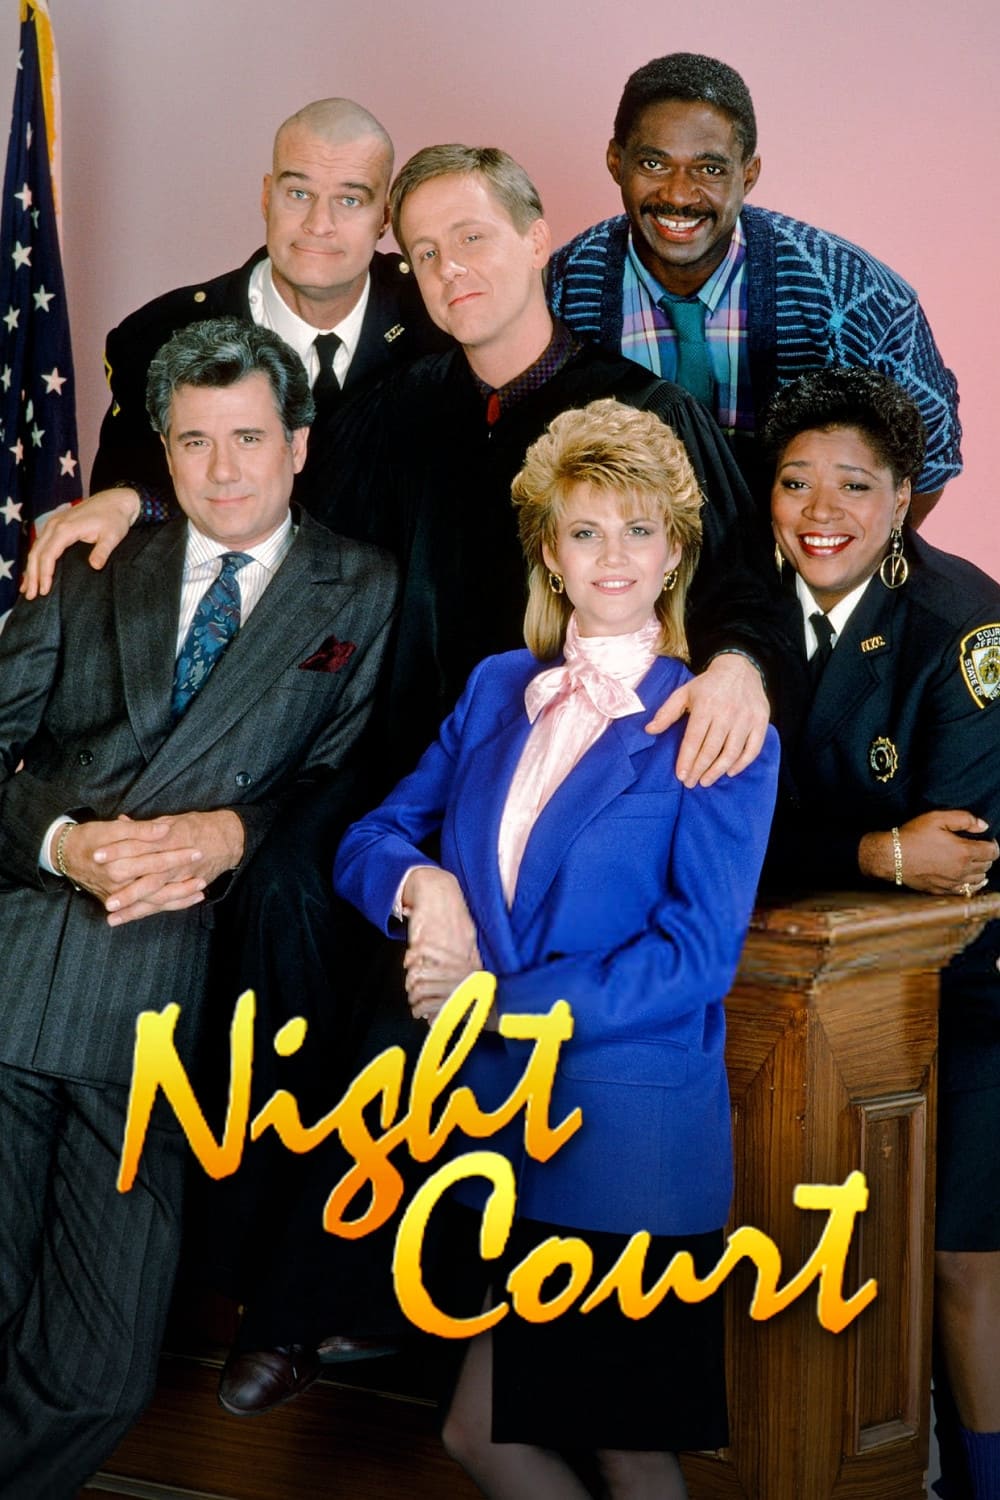 Night Court (1984)